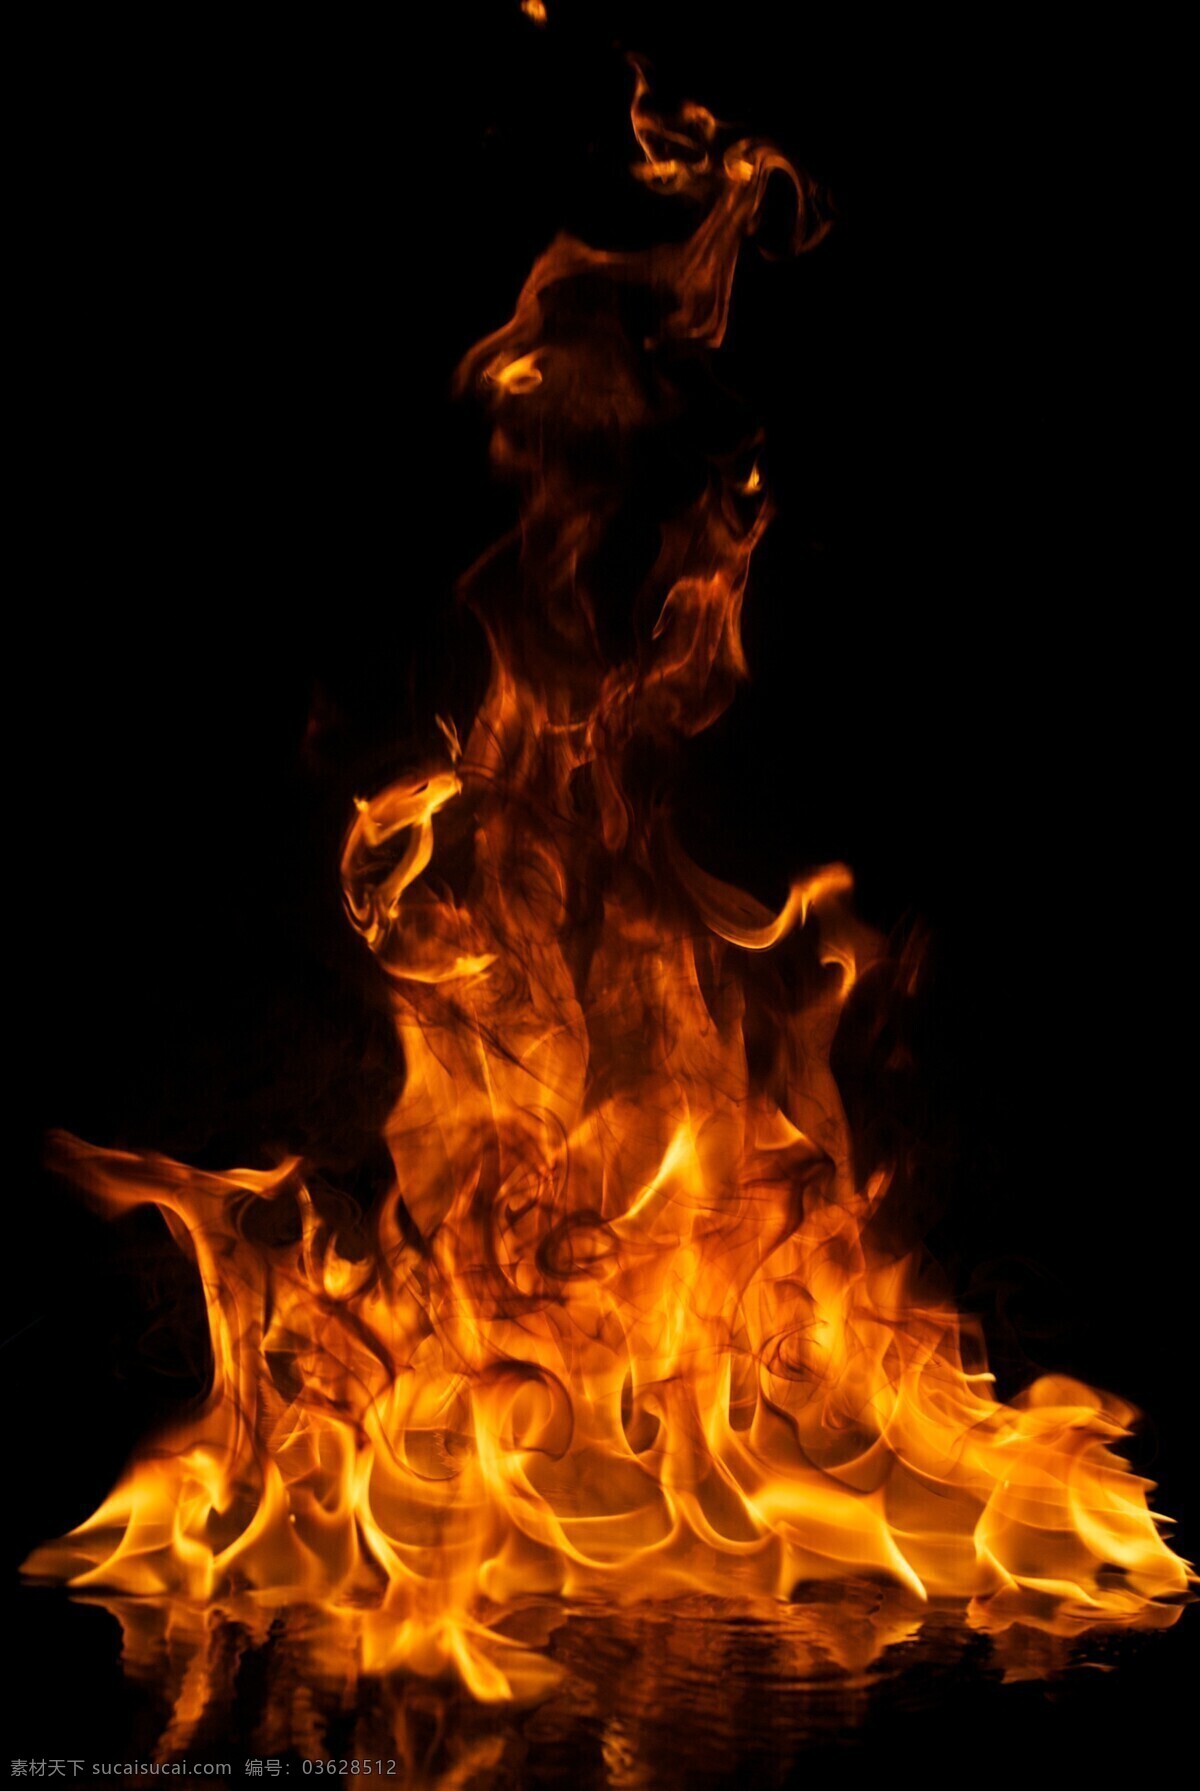 燃烧 大火 火焰 火苗 火焰摄影 倒影 燃烧的大火 火焰图片 生活百科